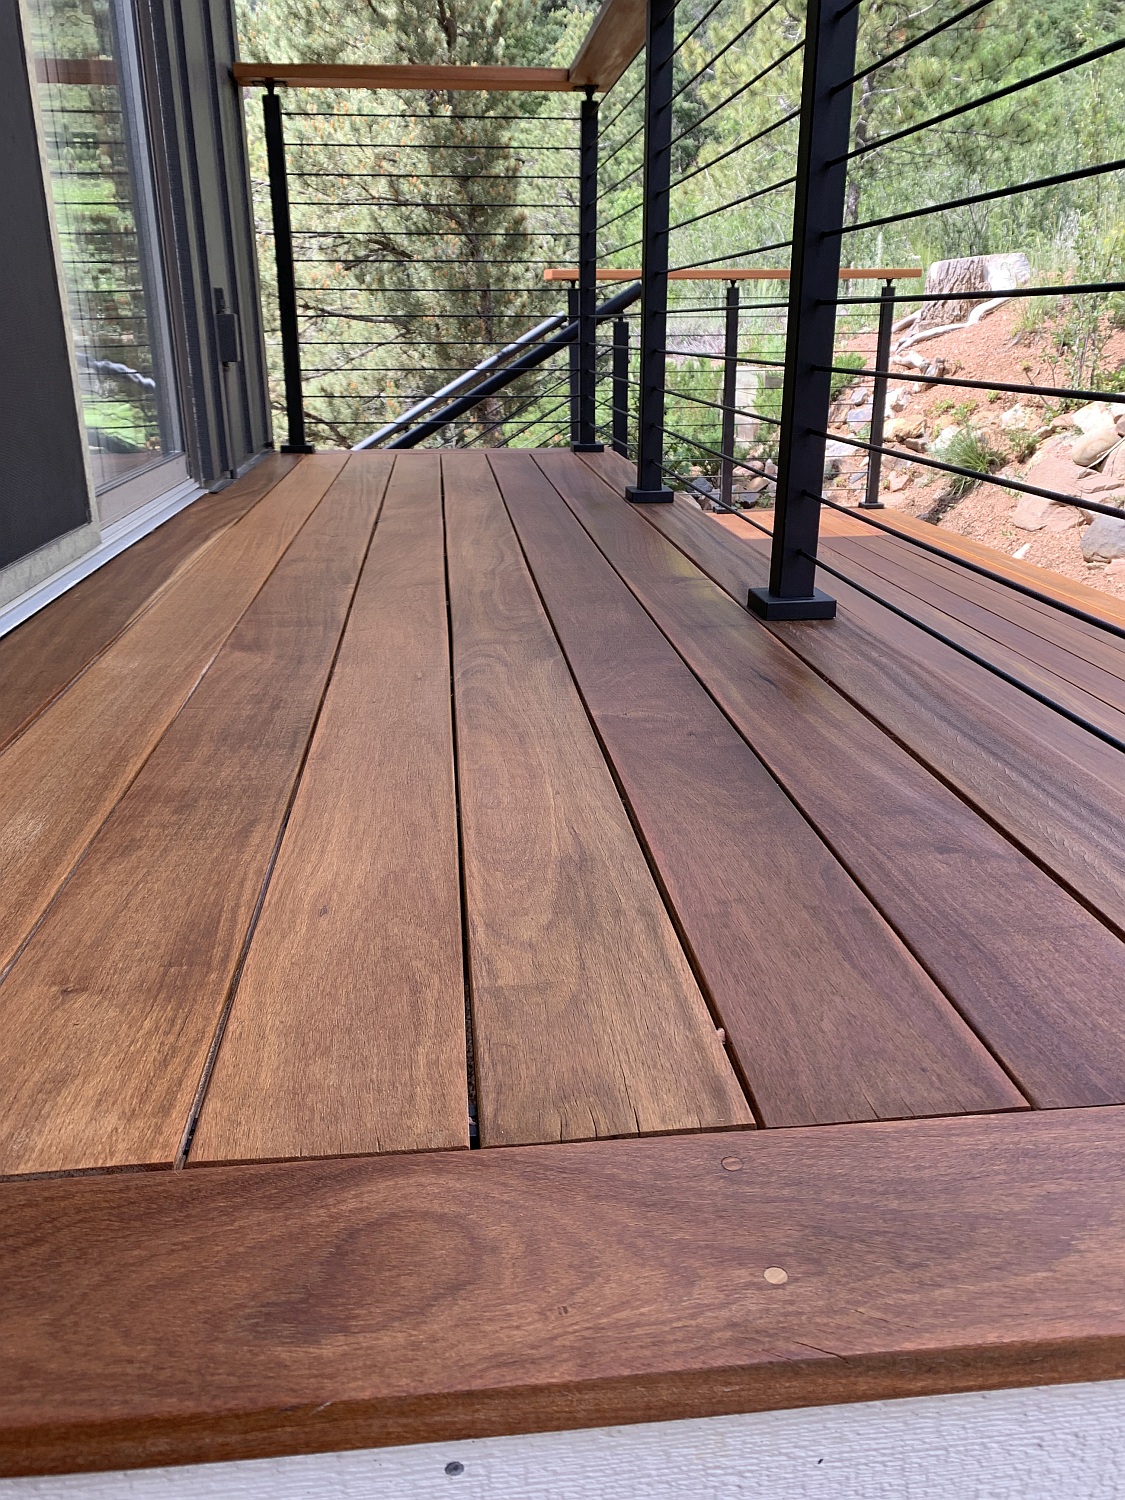 Cumaru hardwood deck with a custom railing - 3x3 posts with 1/4